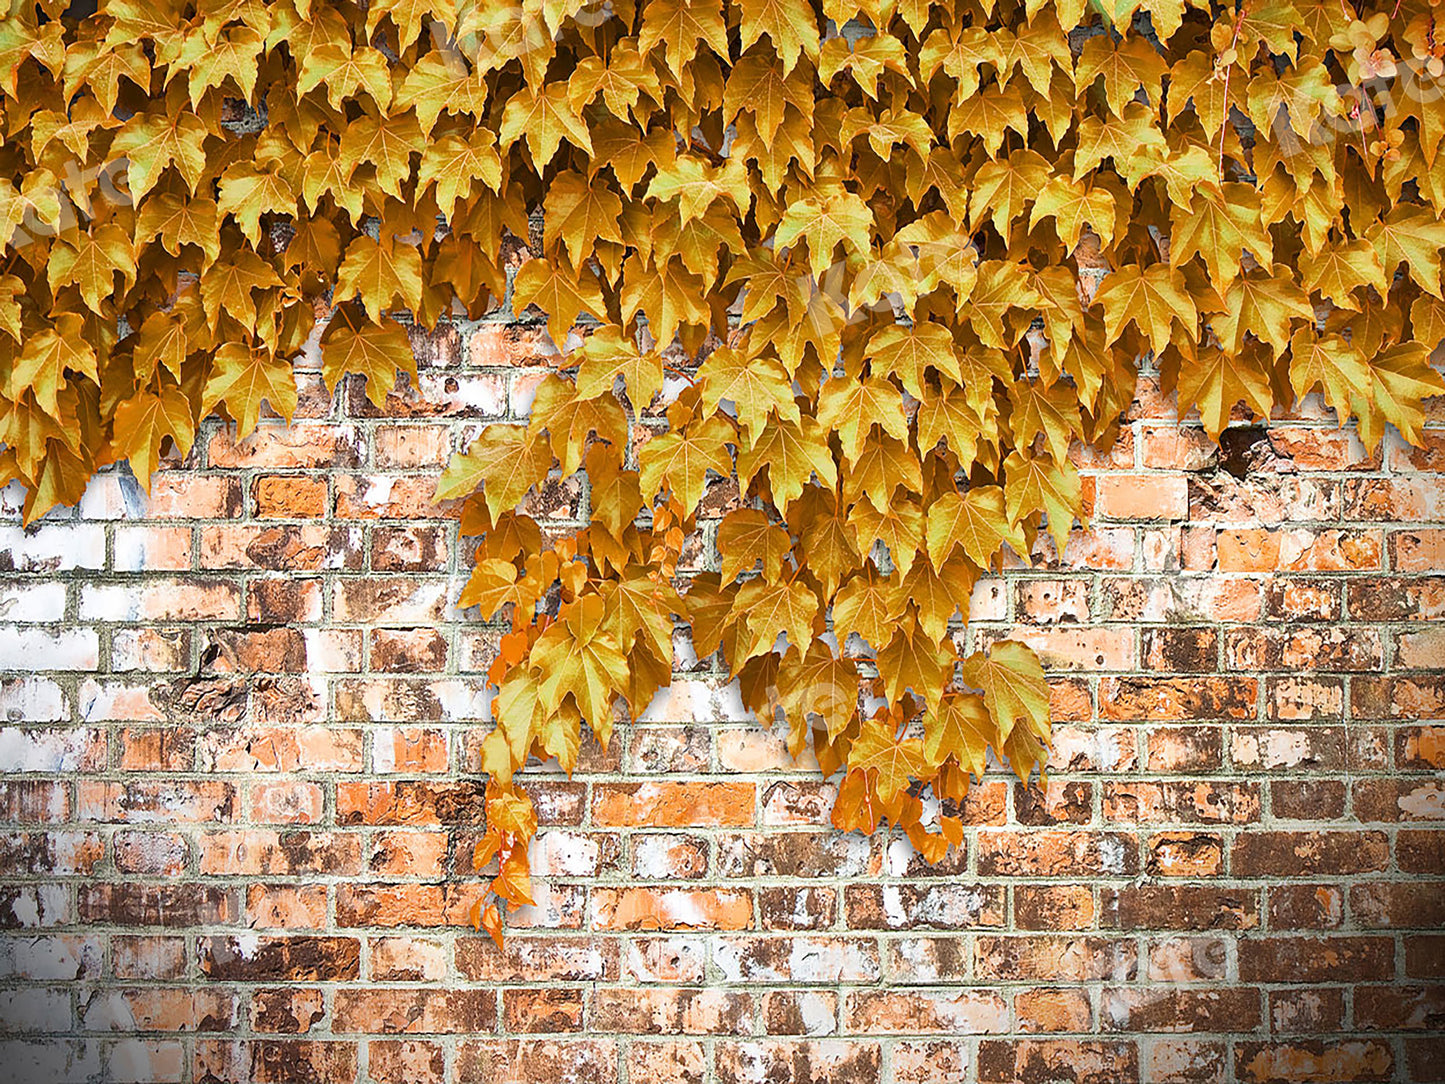 kate 黄色のクリーパーと秋の背景のレンガの壁によって設計されたJS photography